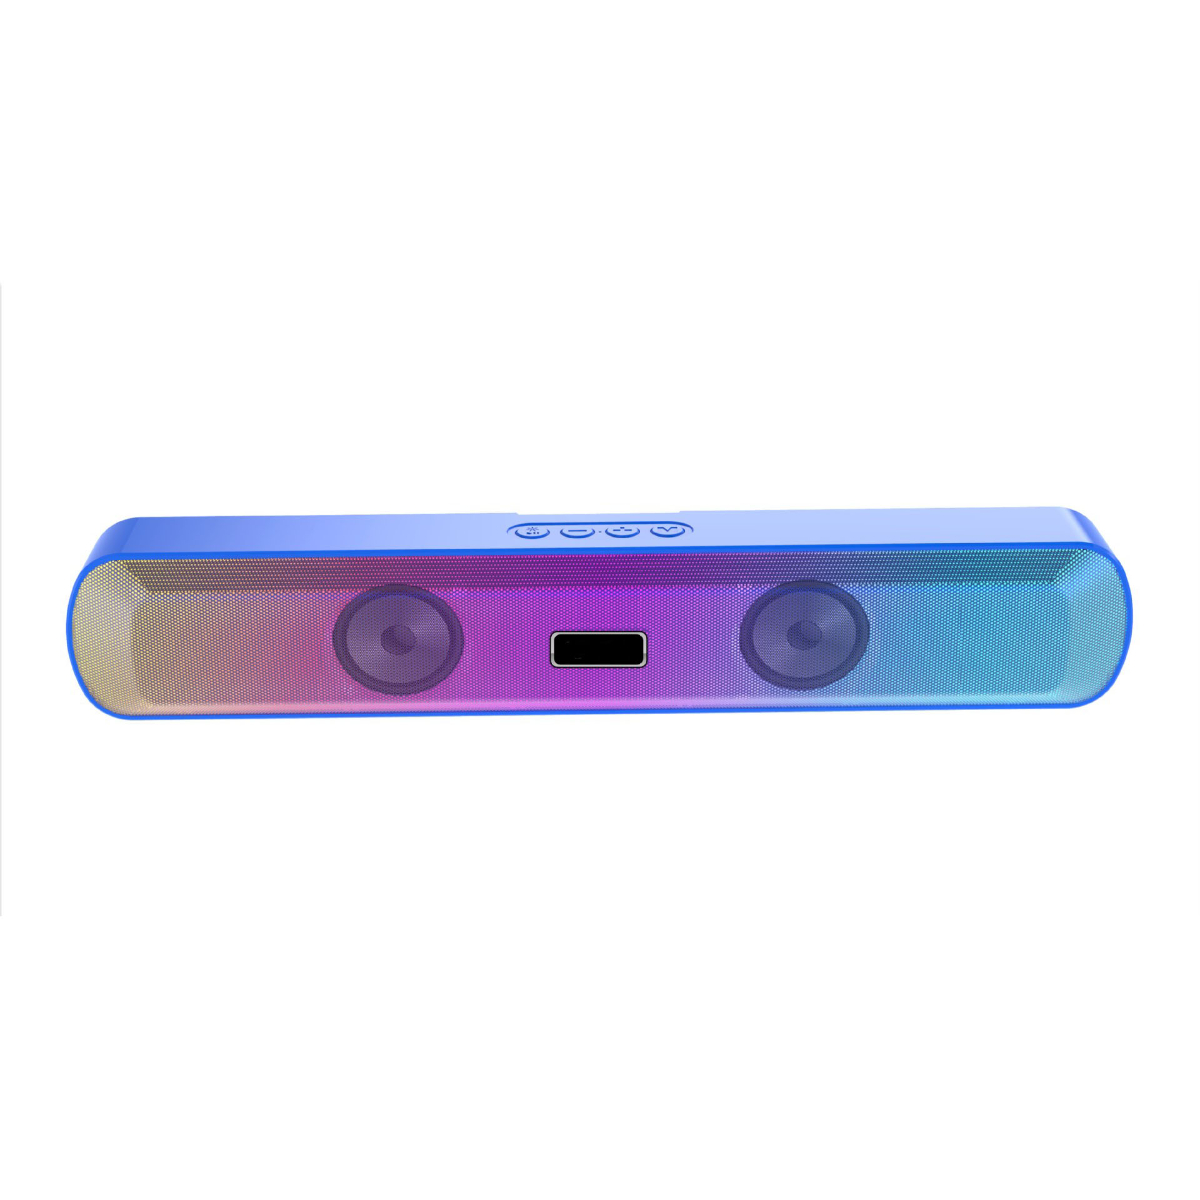 ENBAOXIN Langer Bluetooth-Lautsprecher, Subwoofer, Dazzle Blau Klangqualität Bluetooth-Lautsprecher, Farbiges Hohe Glühen